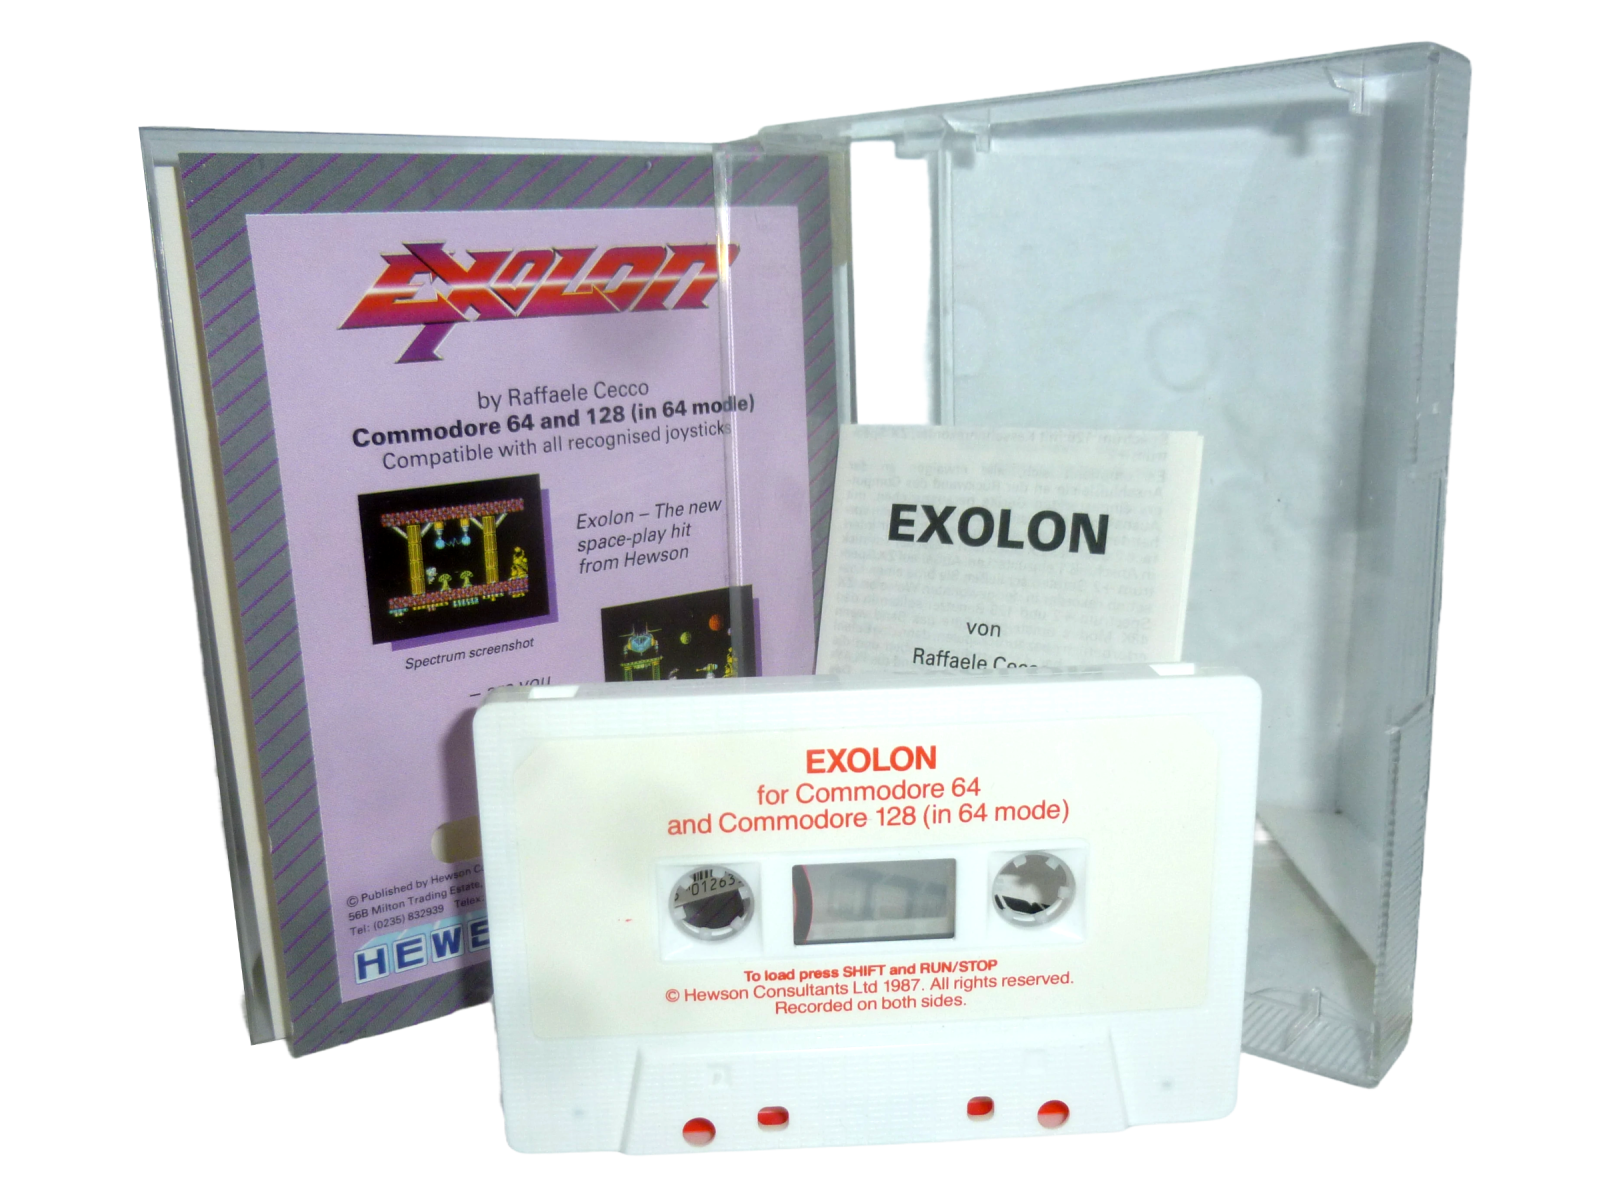 Exolon - Kassette / Datasette Hewson 1986 2